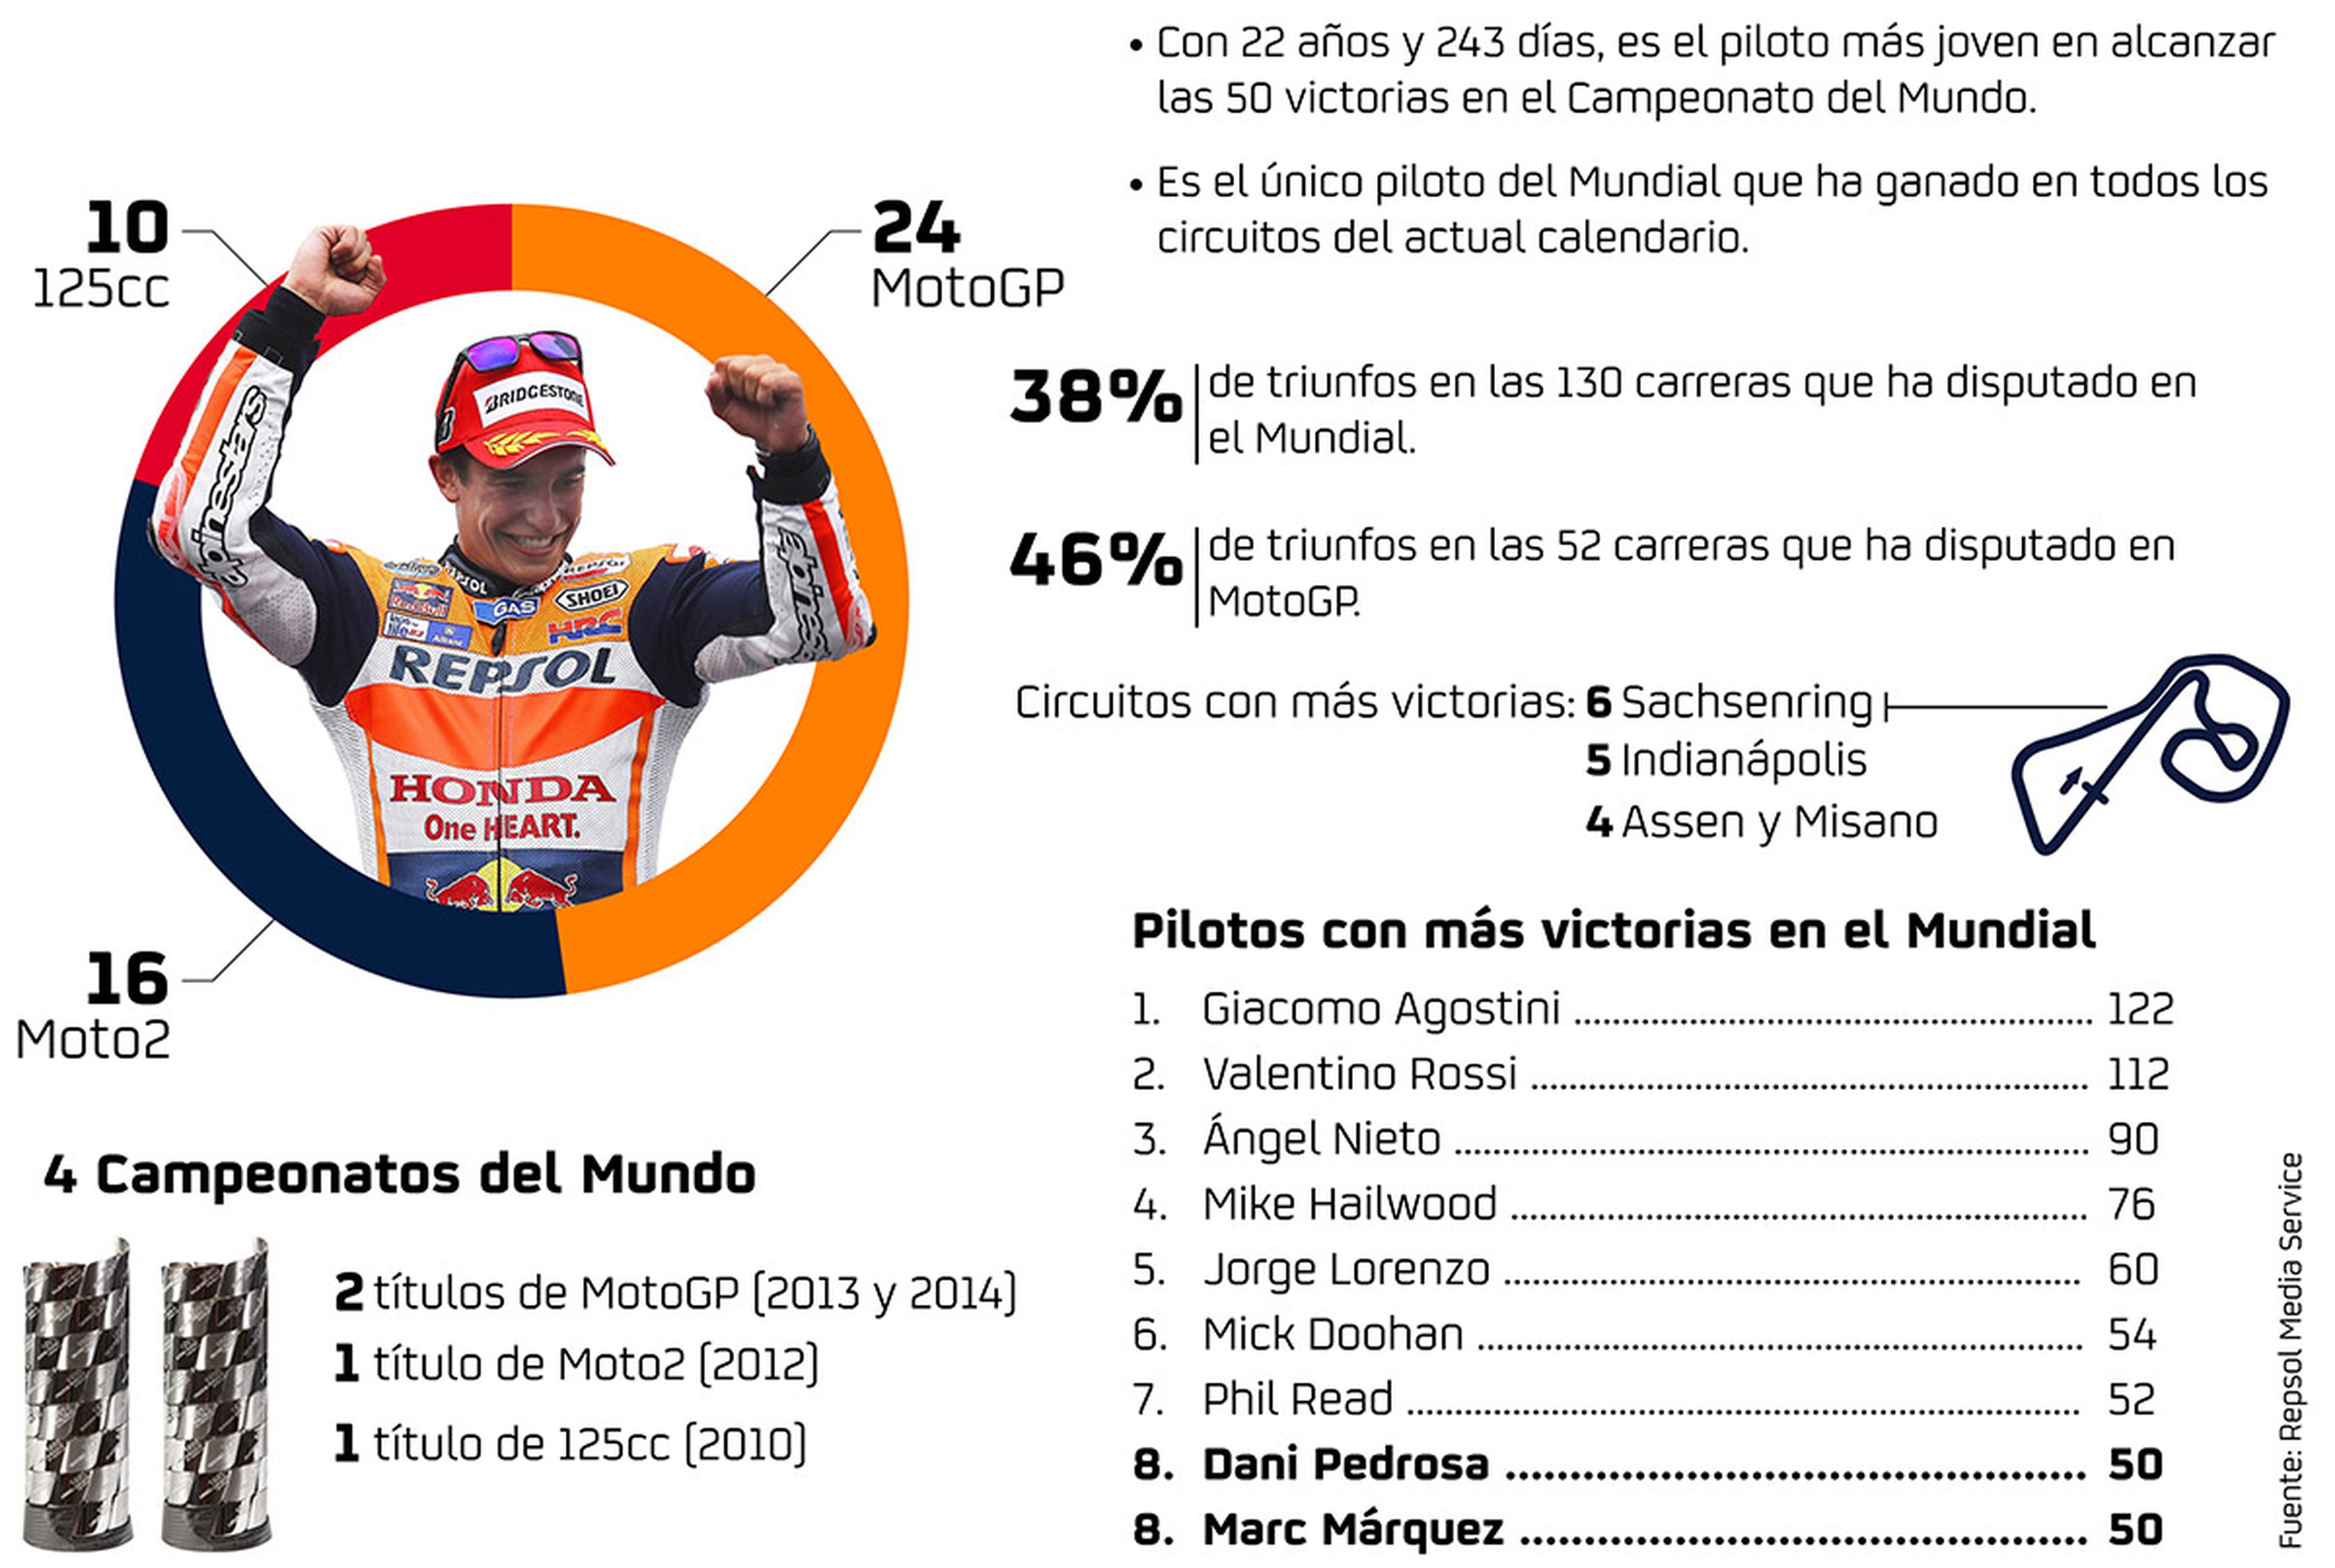 Marc Márquez logra su victoria número 50